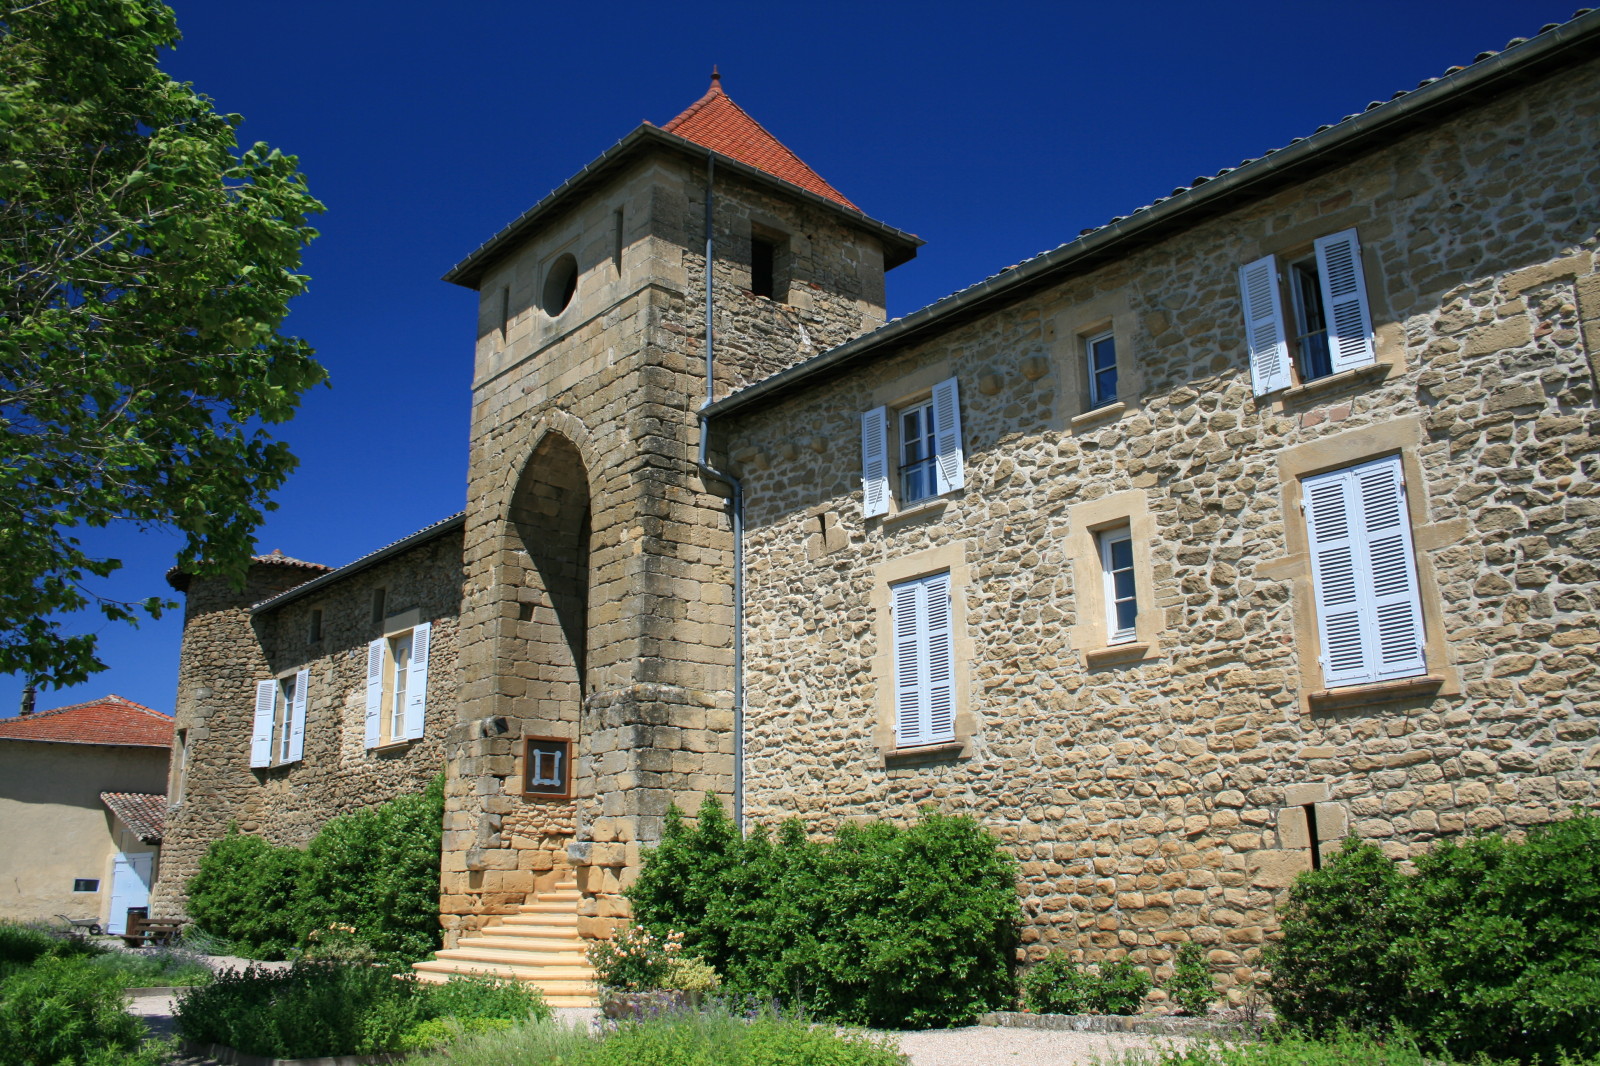 Chateau de montseveroux